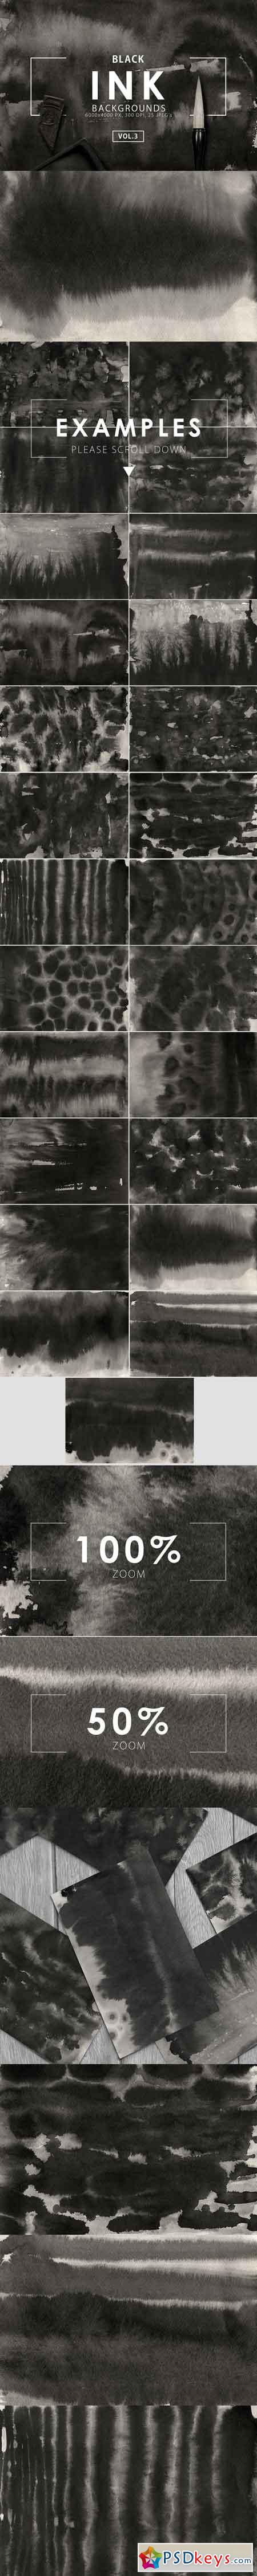 Black Ink Backgrounds Vol. 3 686653